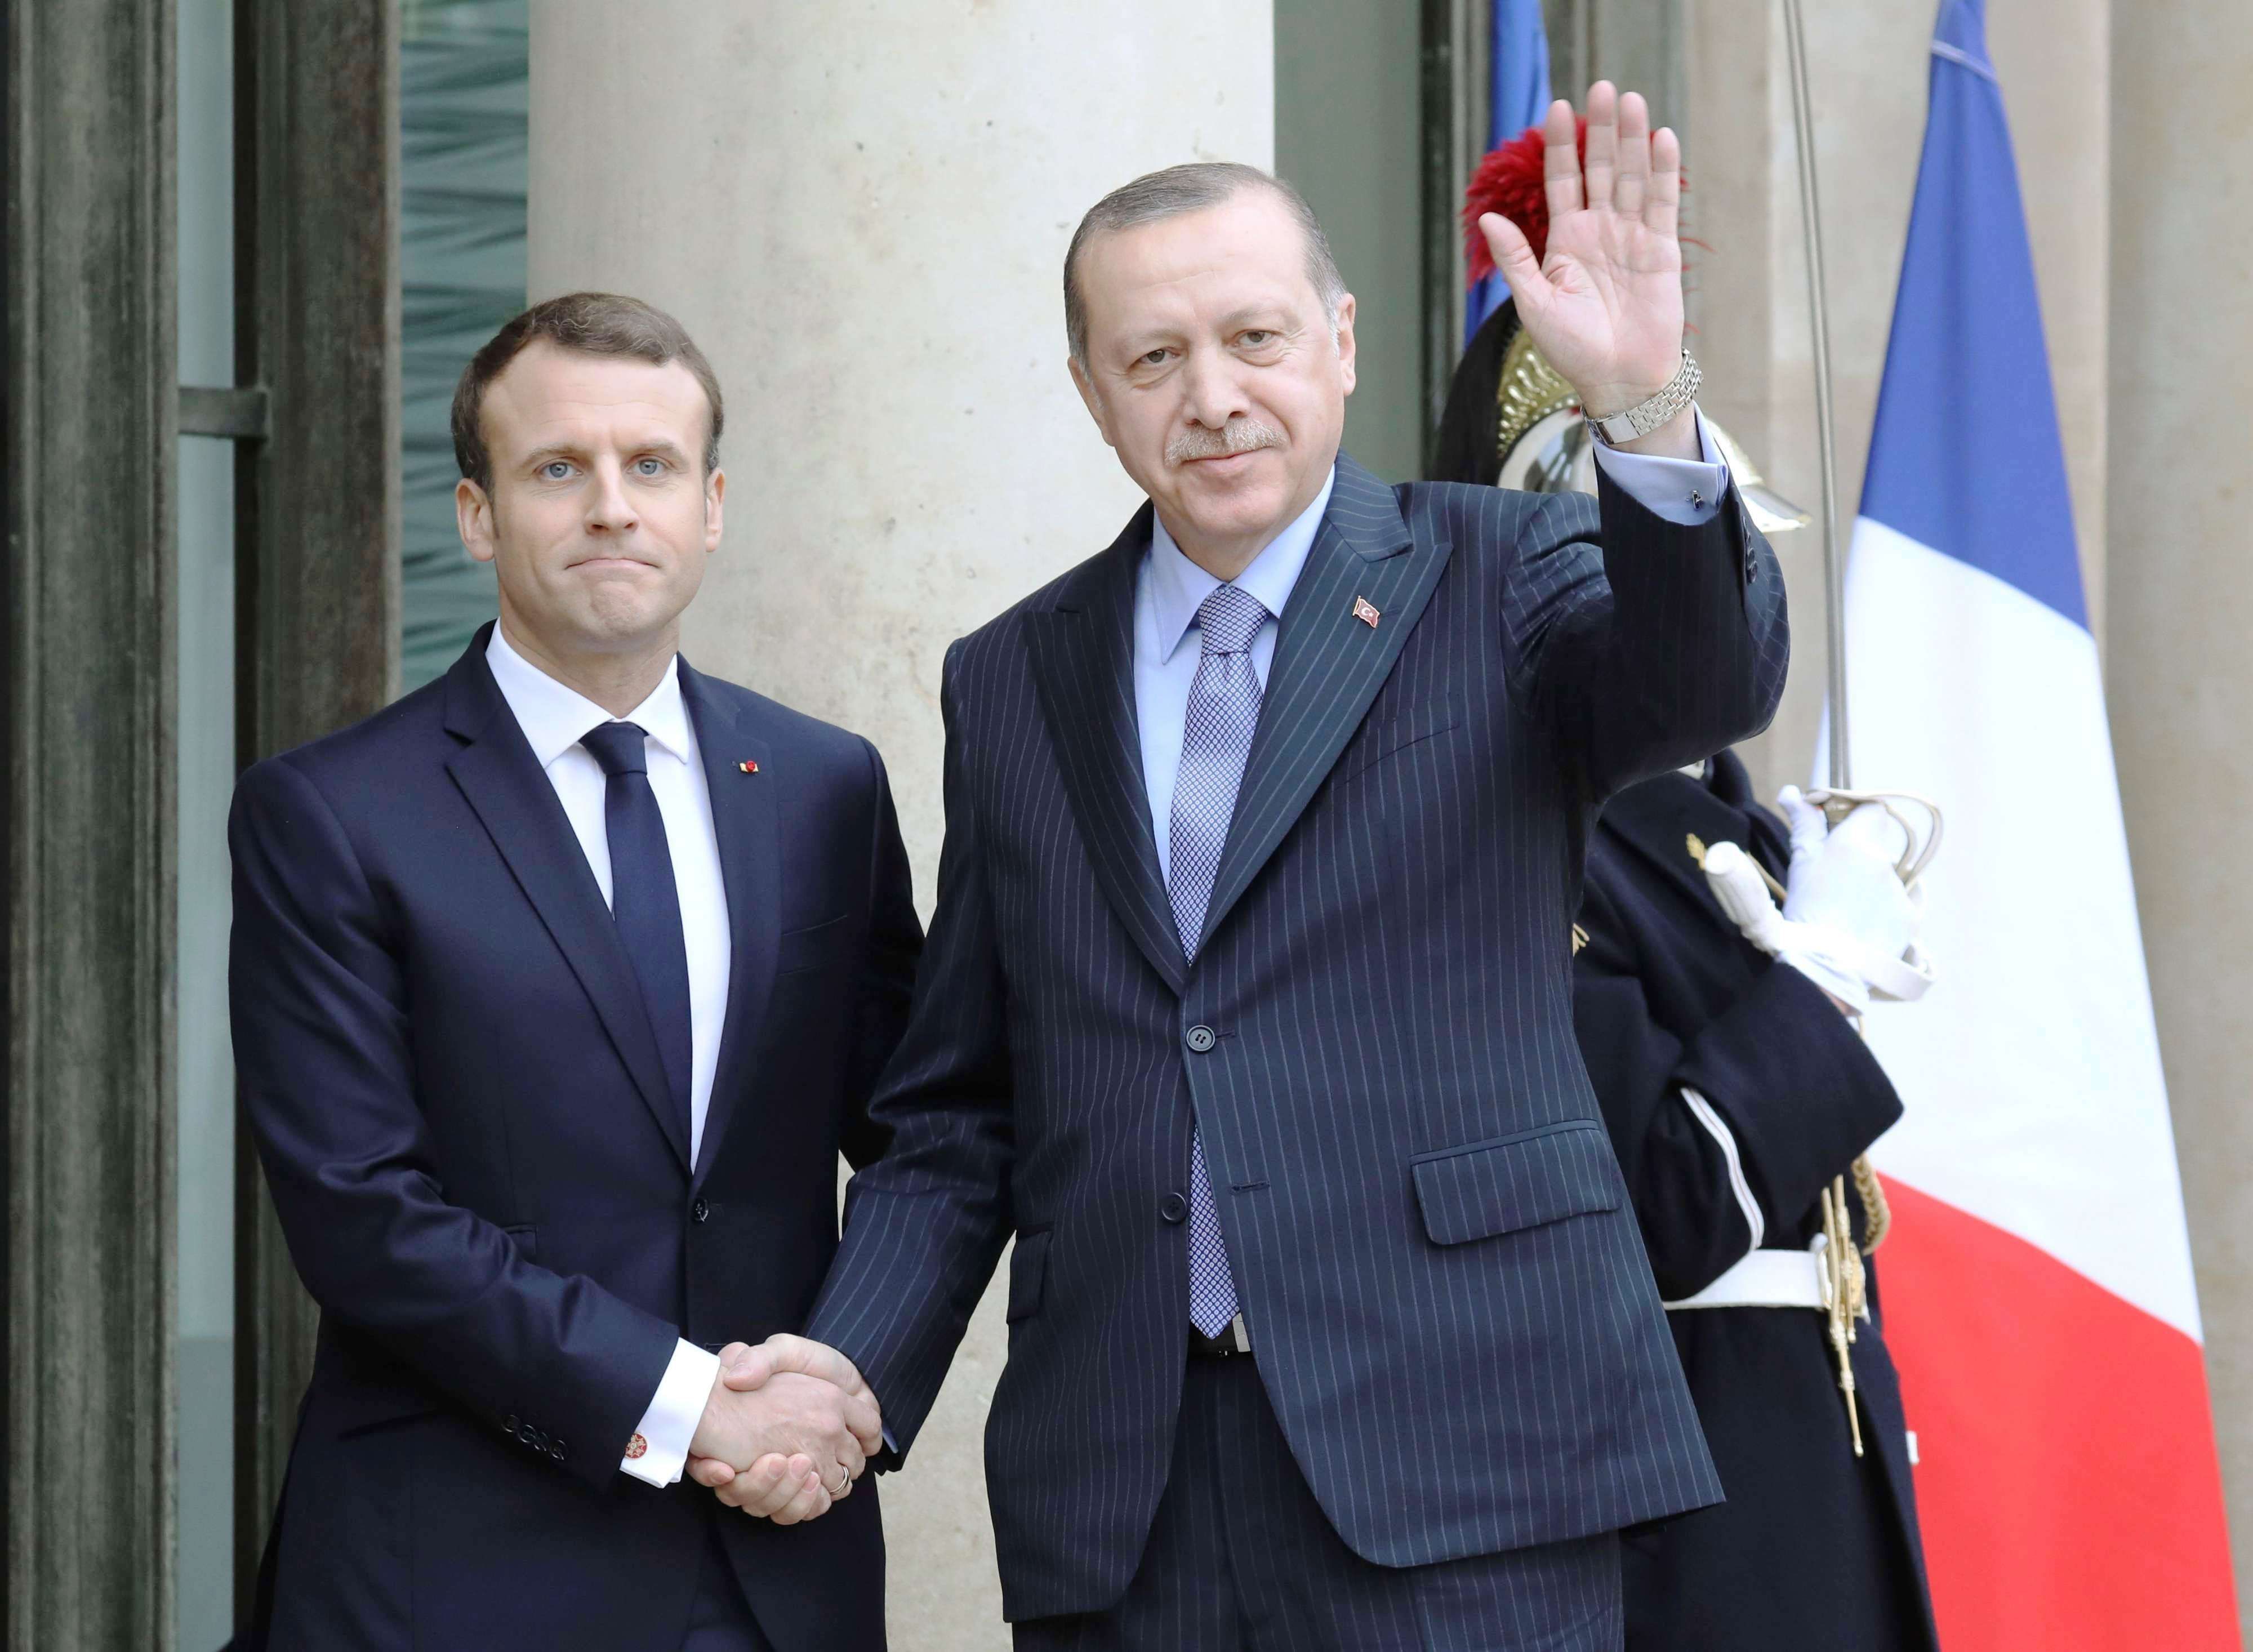 اردوغان سيصطدم بقائمة خلافات طويلة في محاولته تحسين العلاقة مع باريس